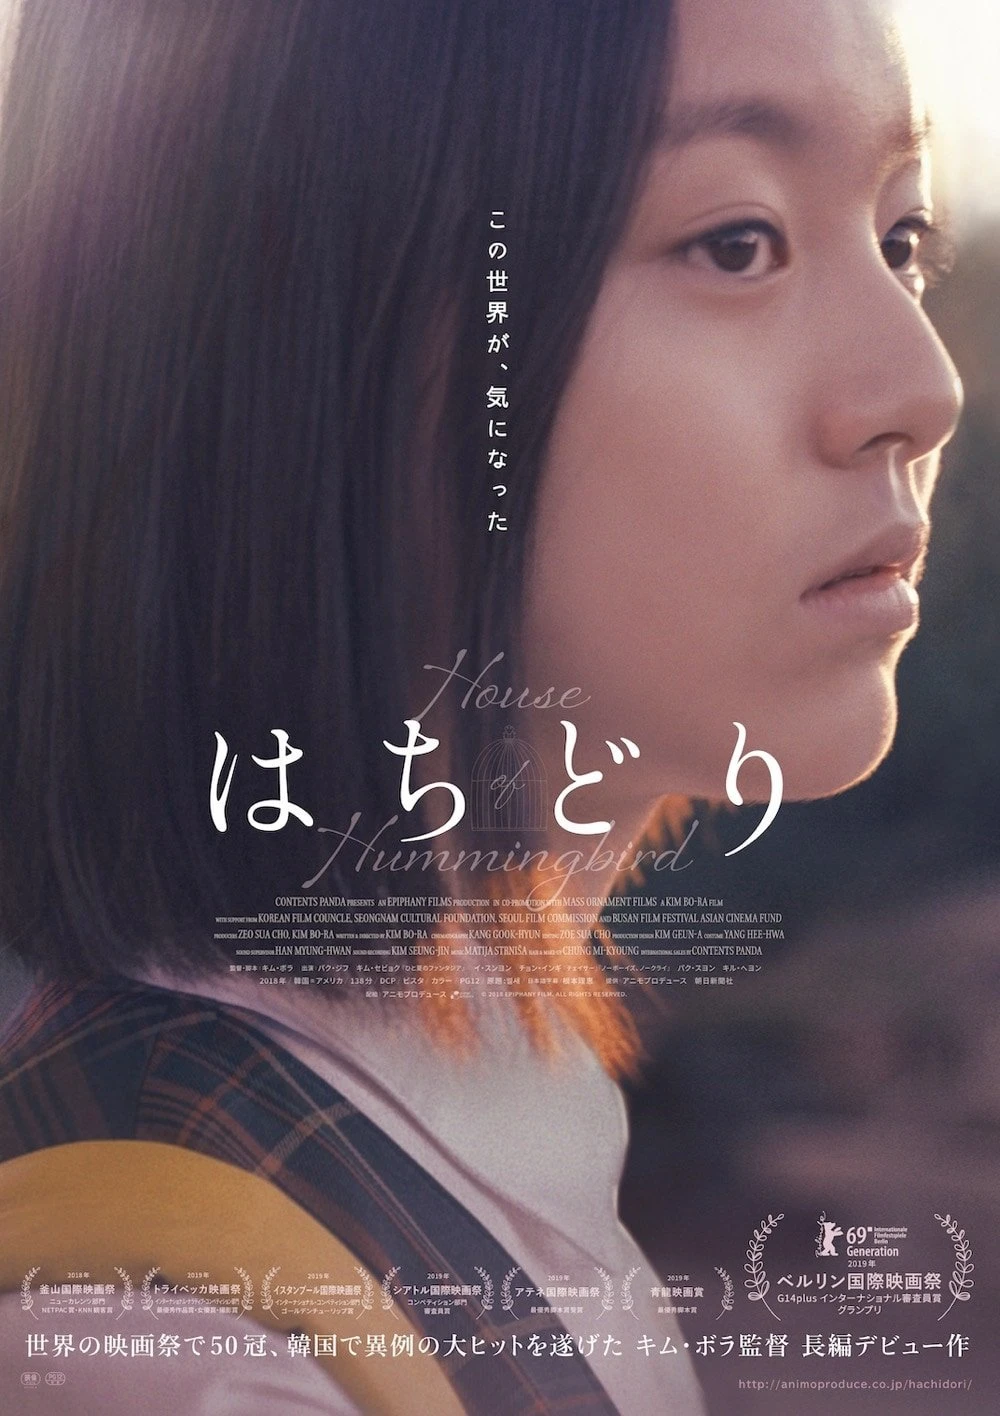 韓国映画『はちどり』アマプラで配信 『パラサイト』に次ぐ評価を得た名作